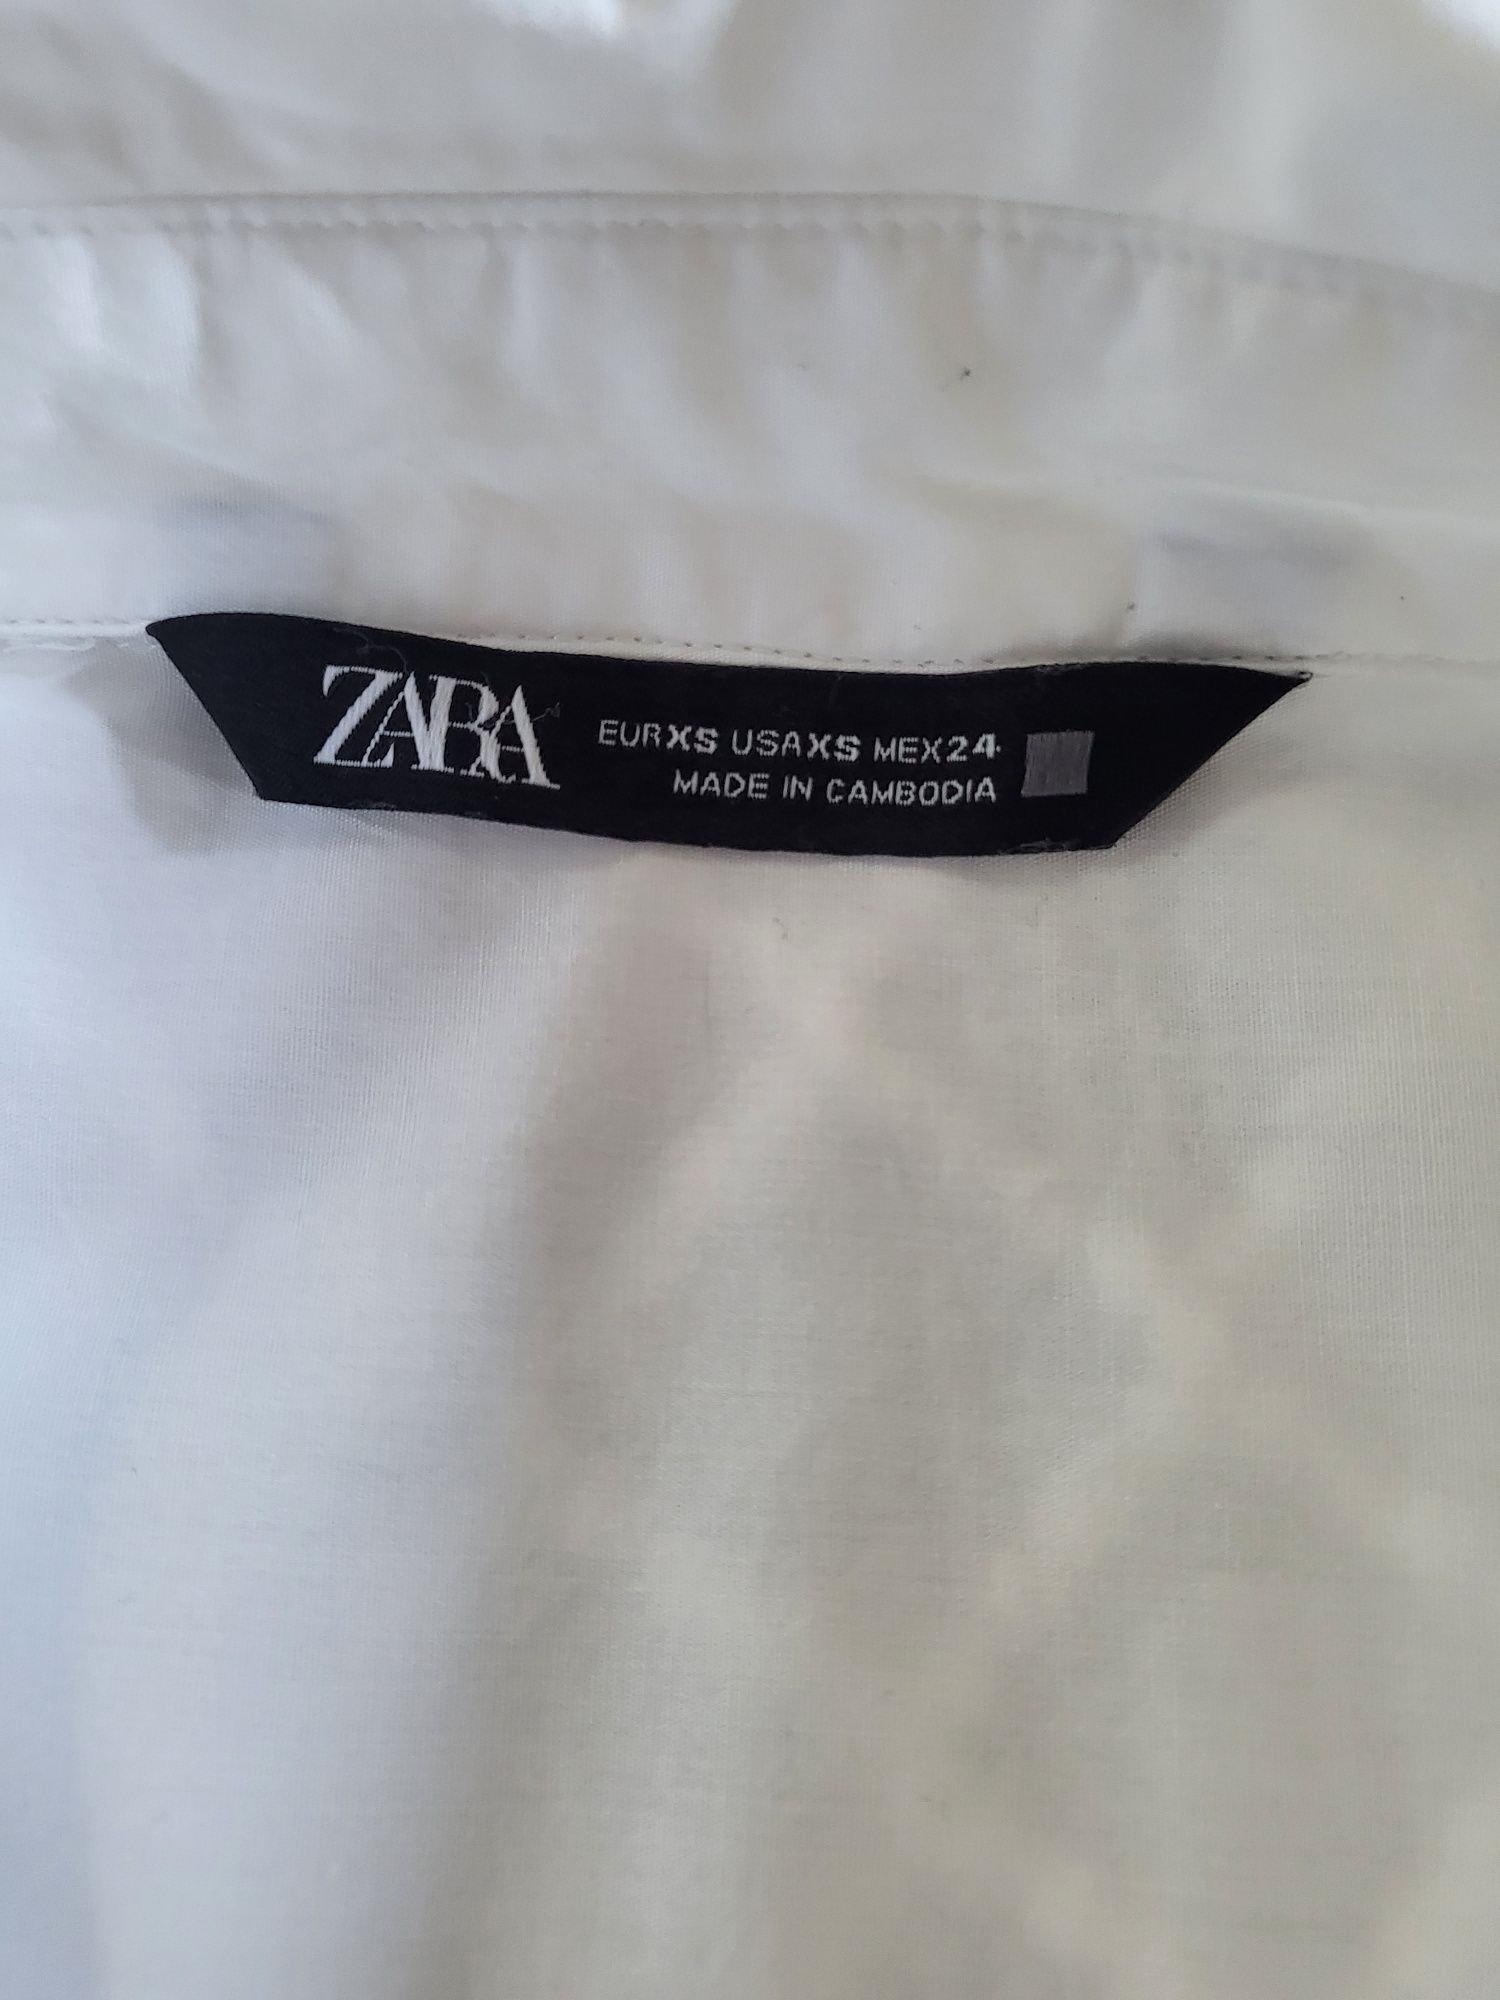 Трендовая белая удлиненная рубашка Zara.
100% котон!